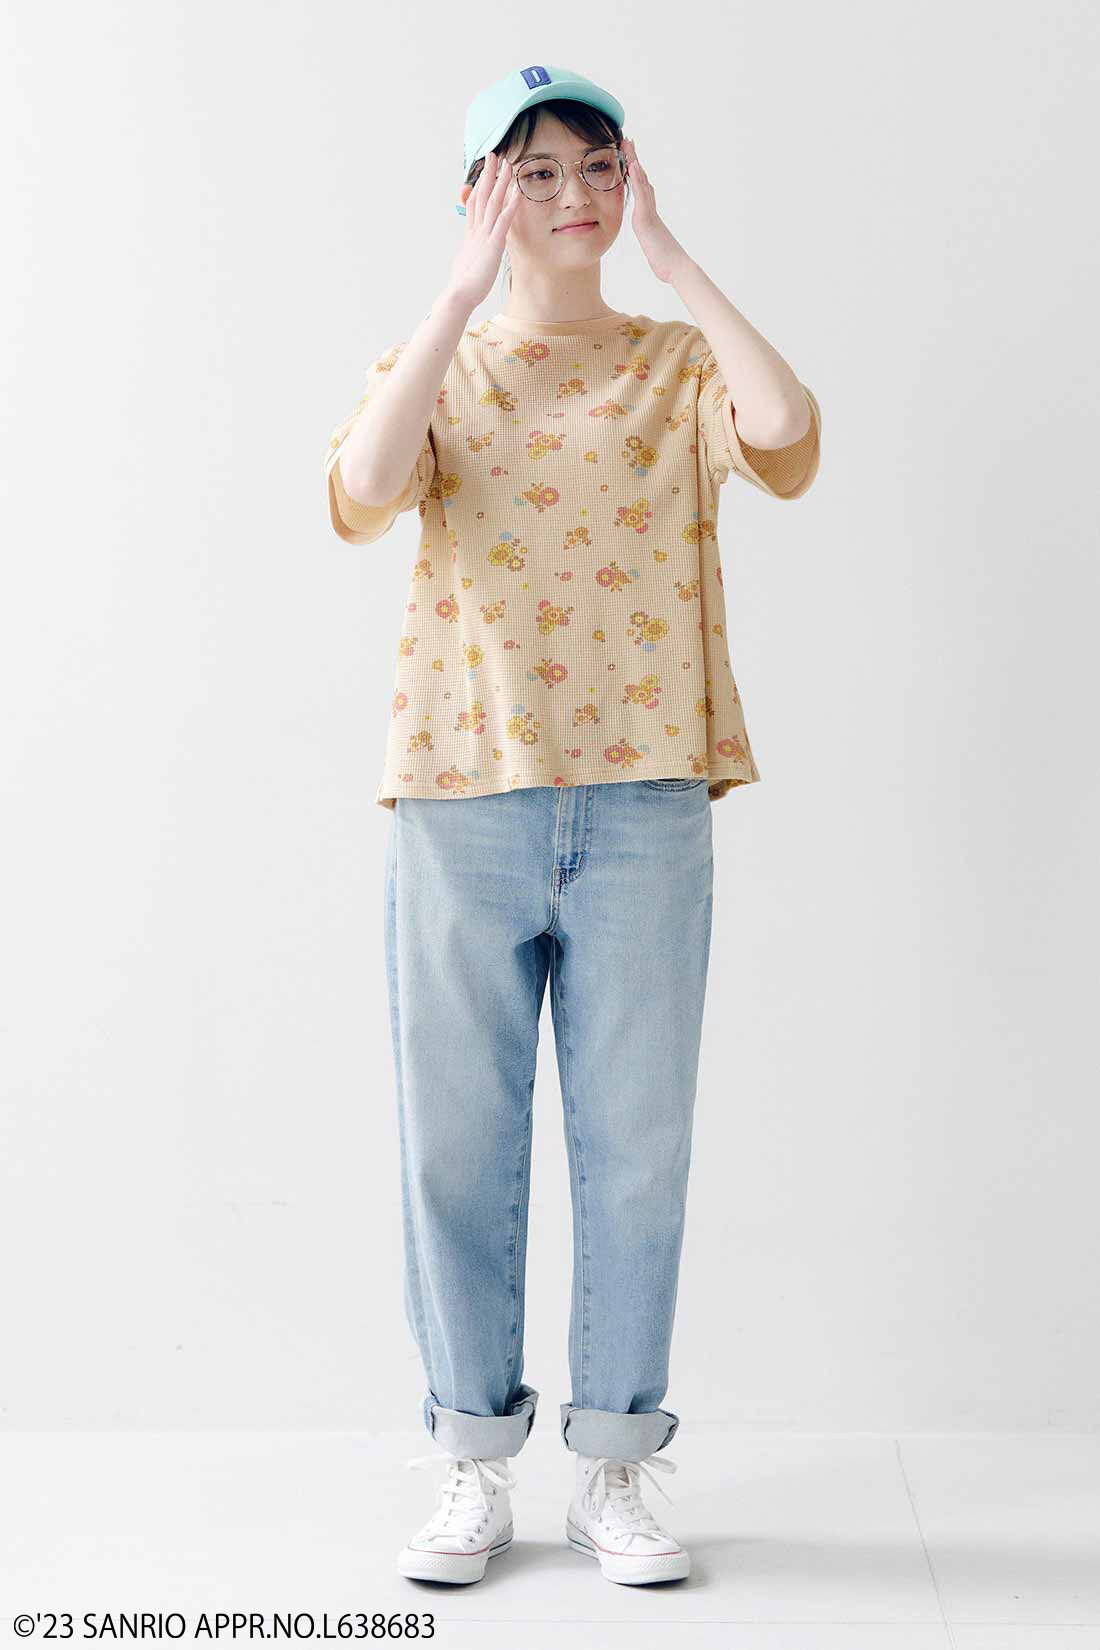 シロップ．|サンリオキャラクターコラボ お花模様のコットンワッフルTシャツ〈ゴロピカドン〉|身長162cm、Mサイズ着用